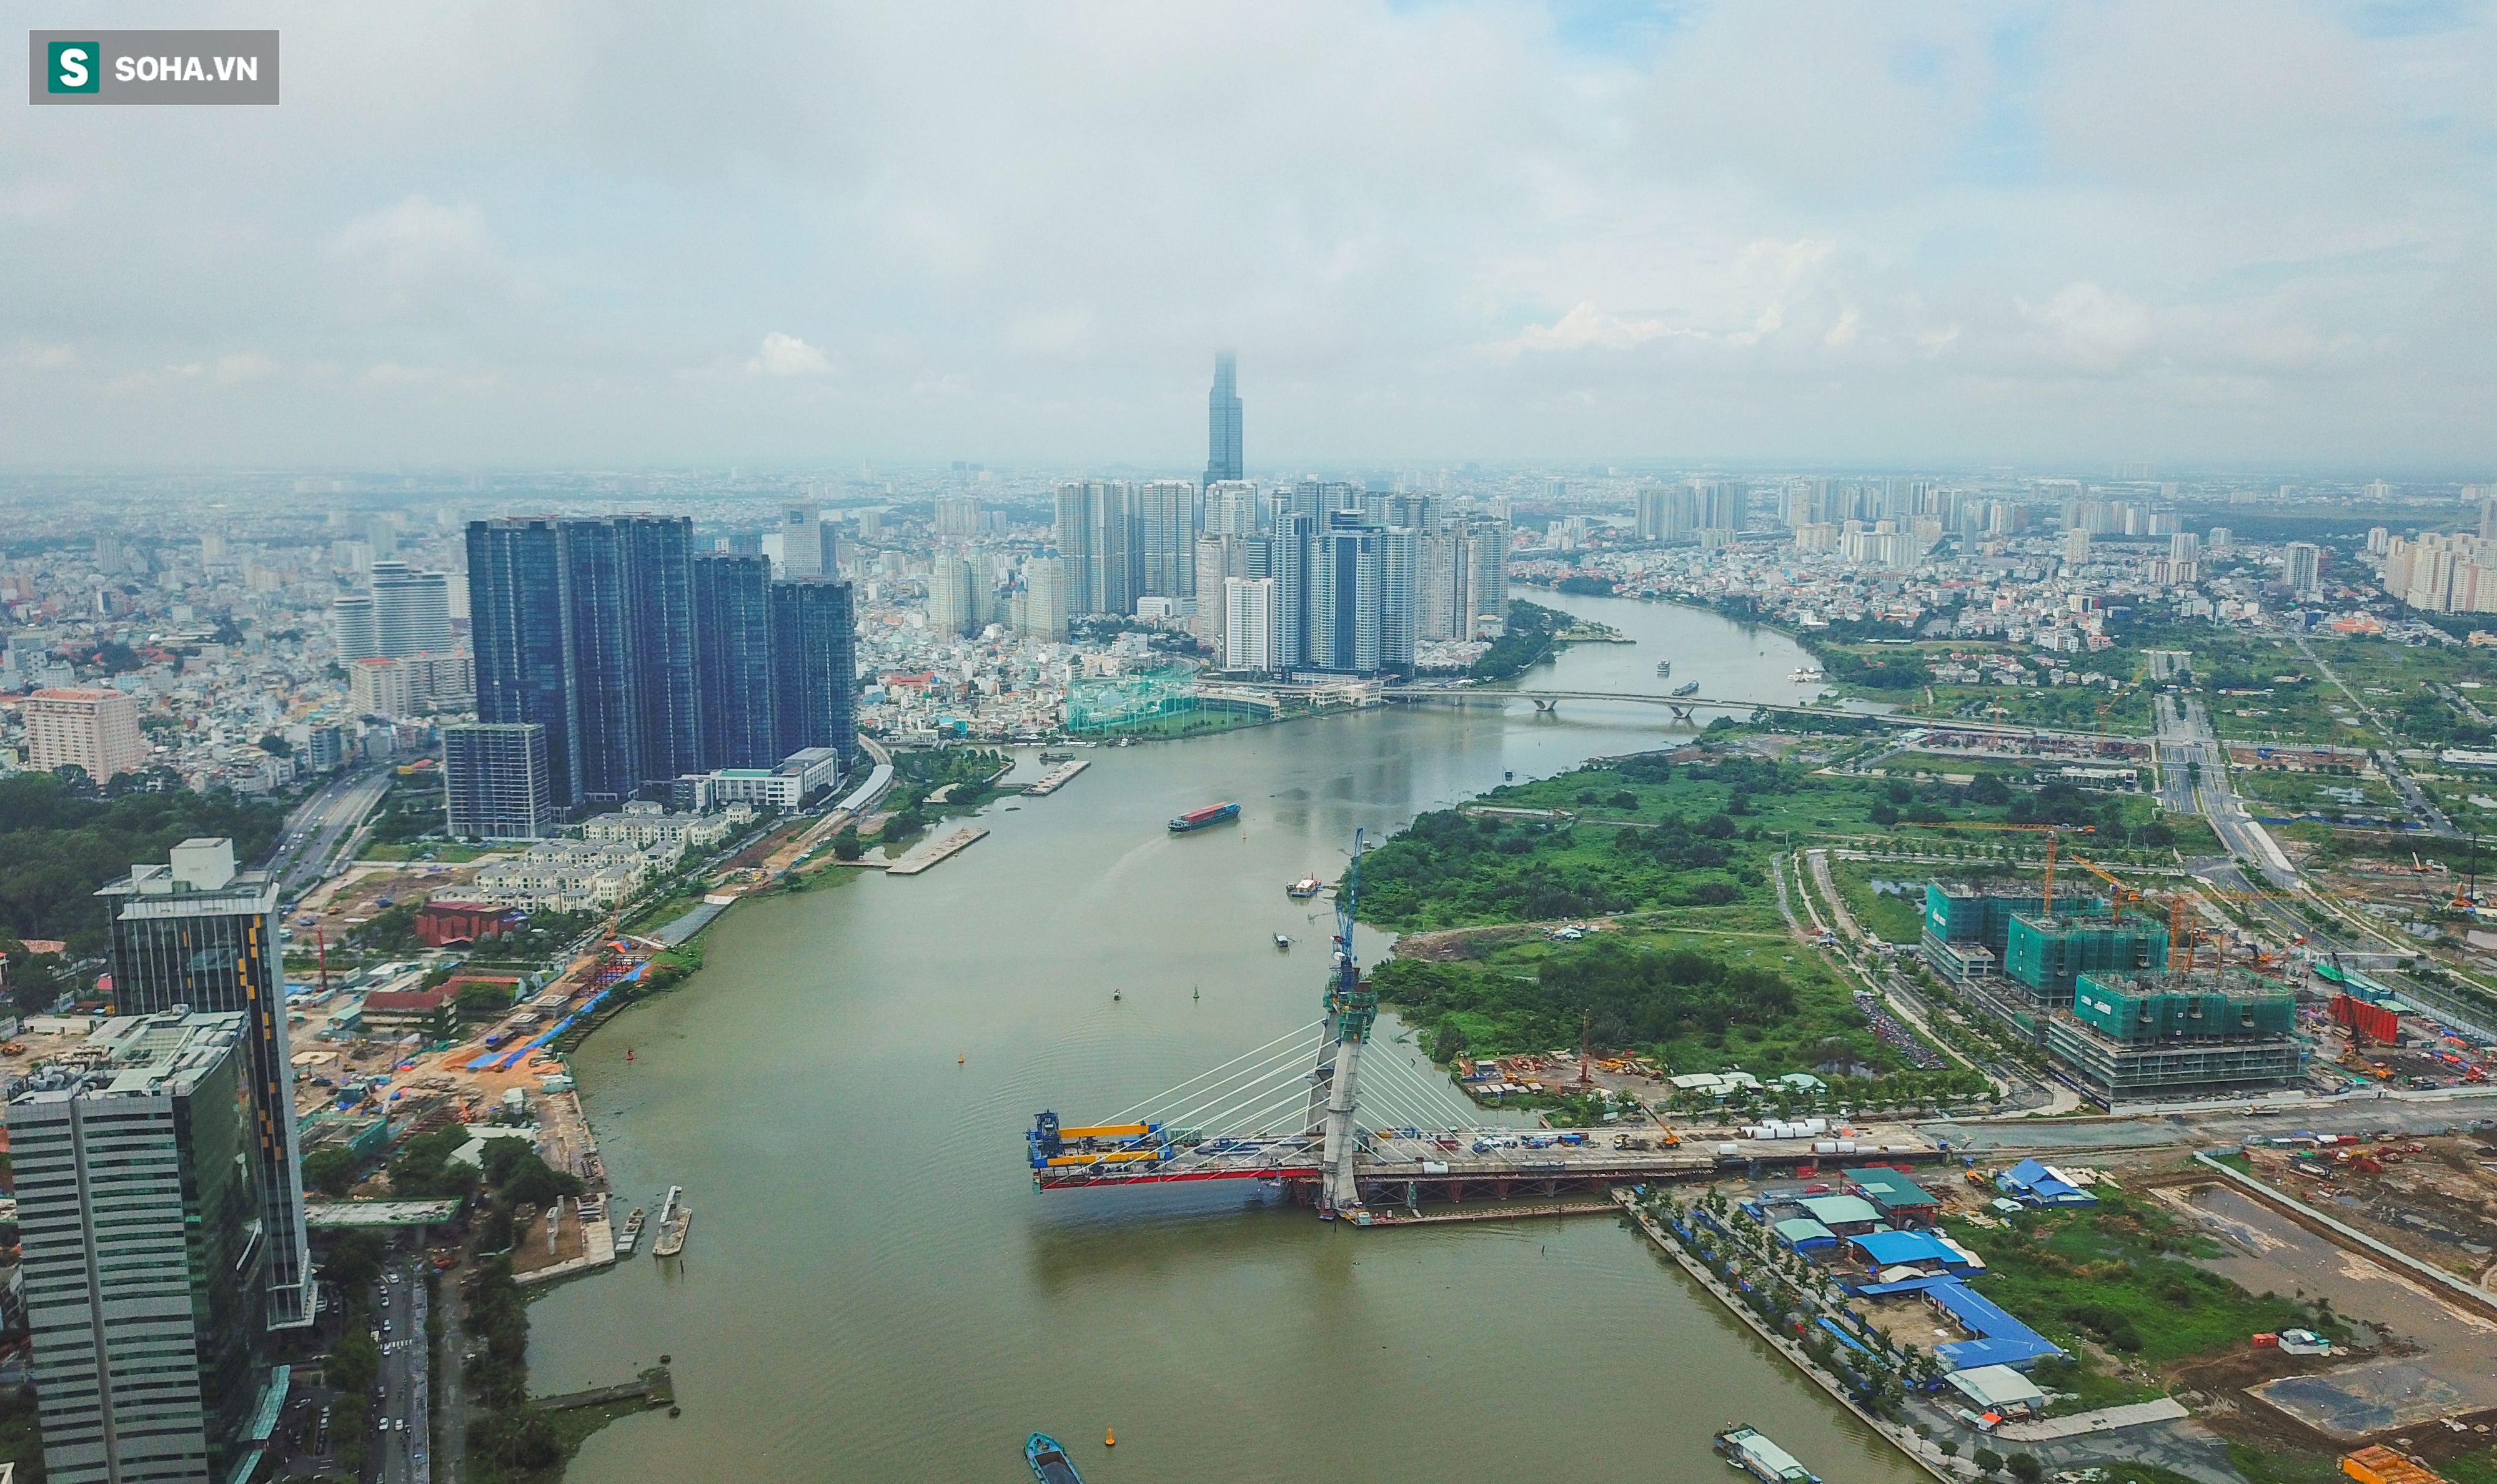 Cầu Thủ Thiêm 2 vươn mình ra sông Sài Gòn, lộ hình dáng khi nhìn từ trên cao - Ảnh 1.